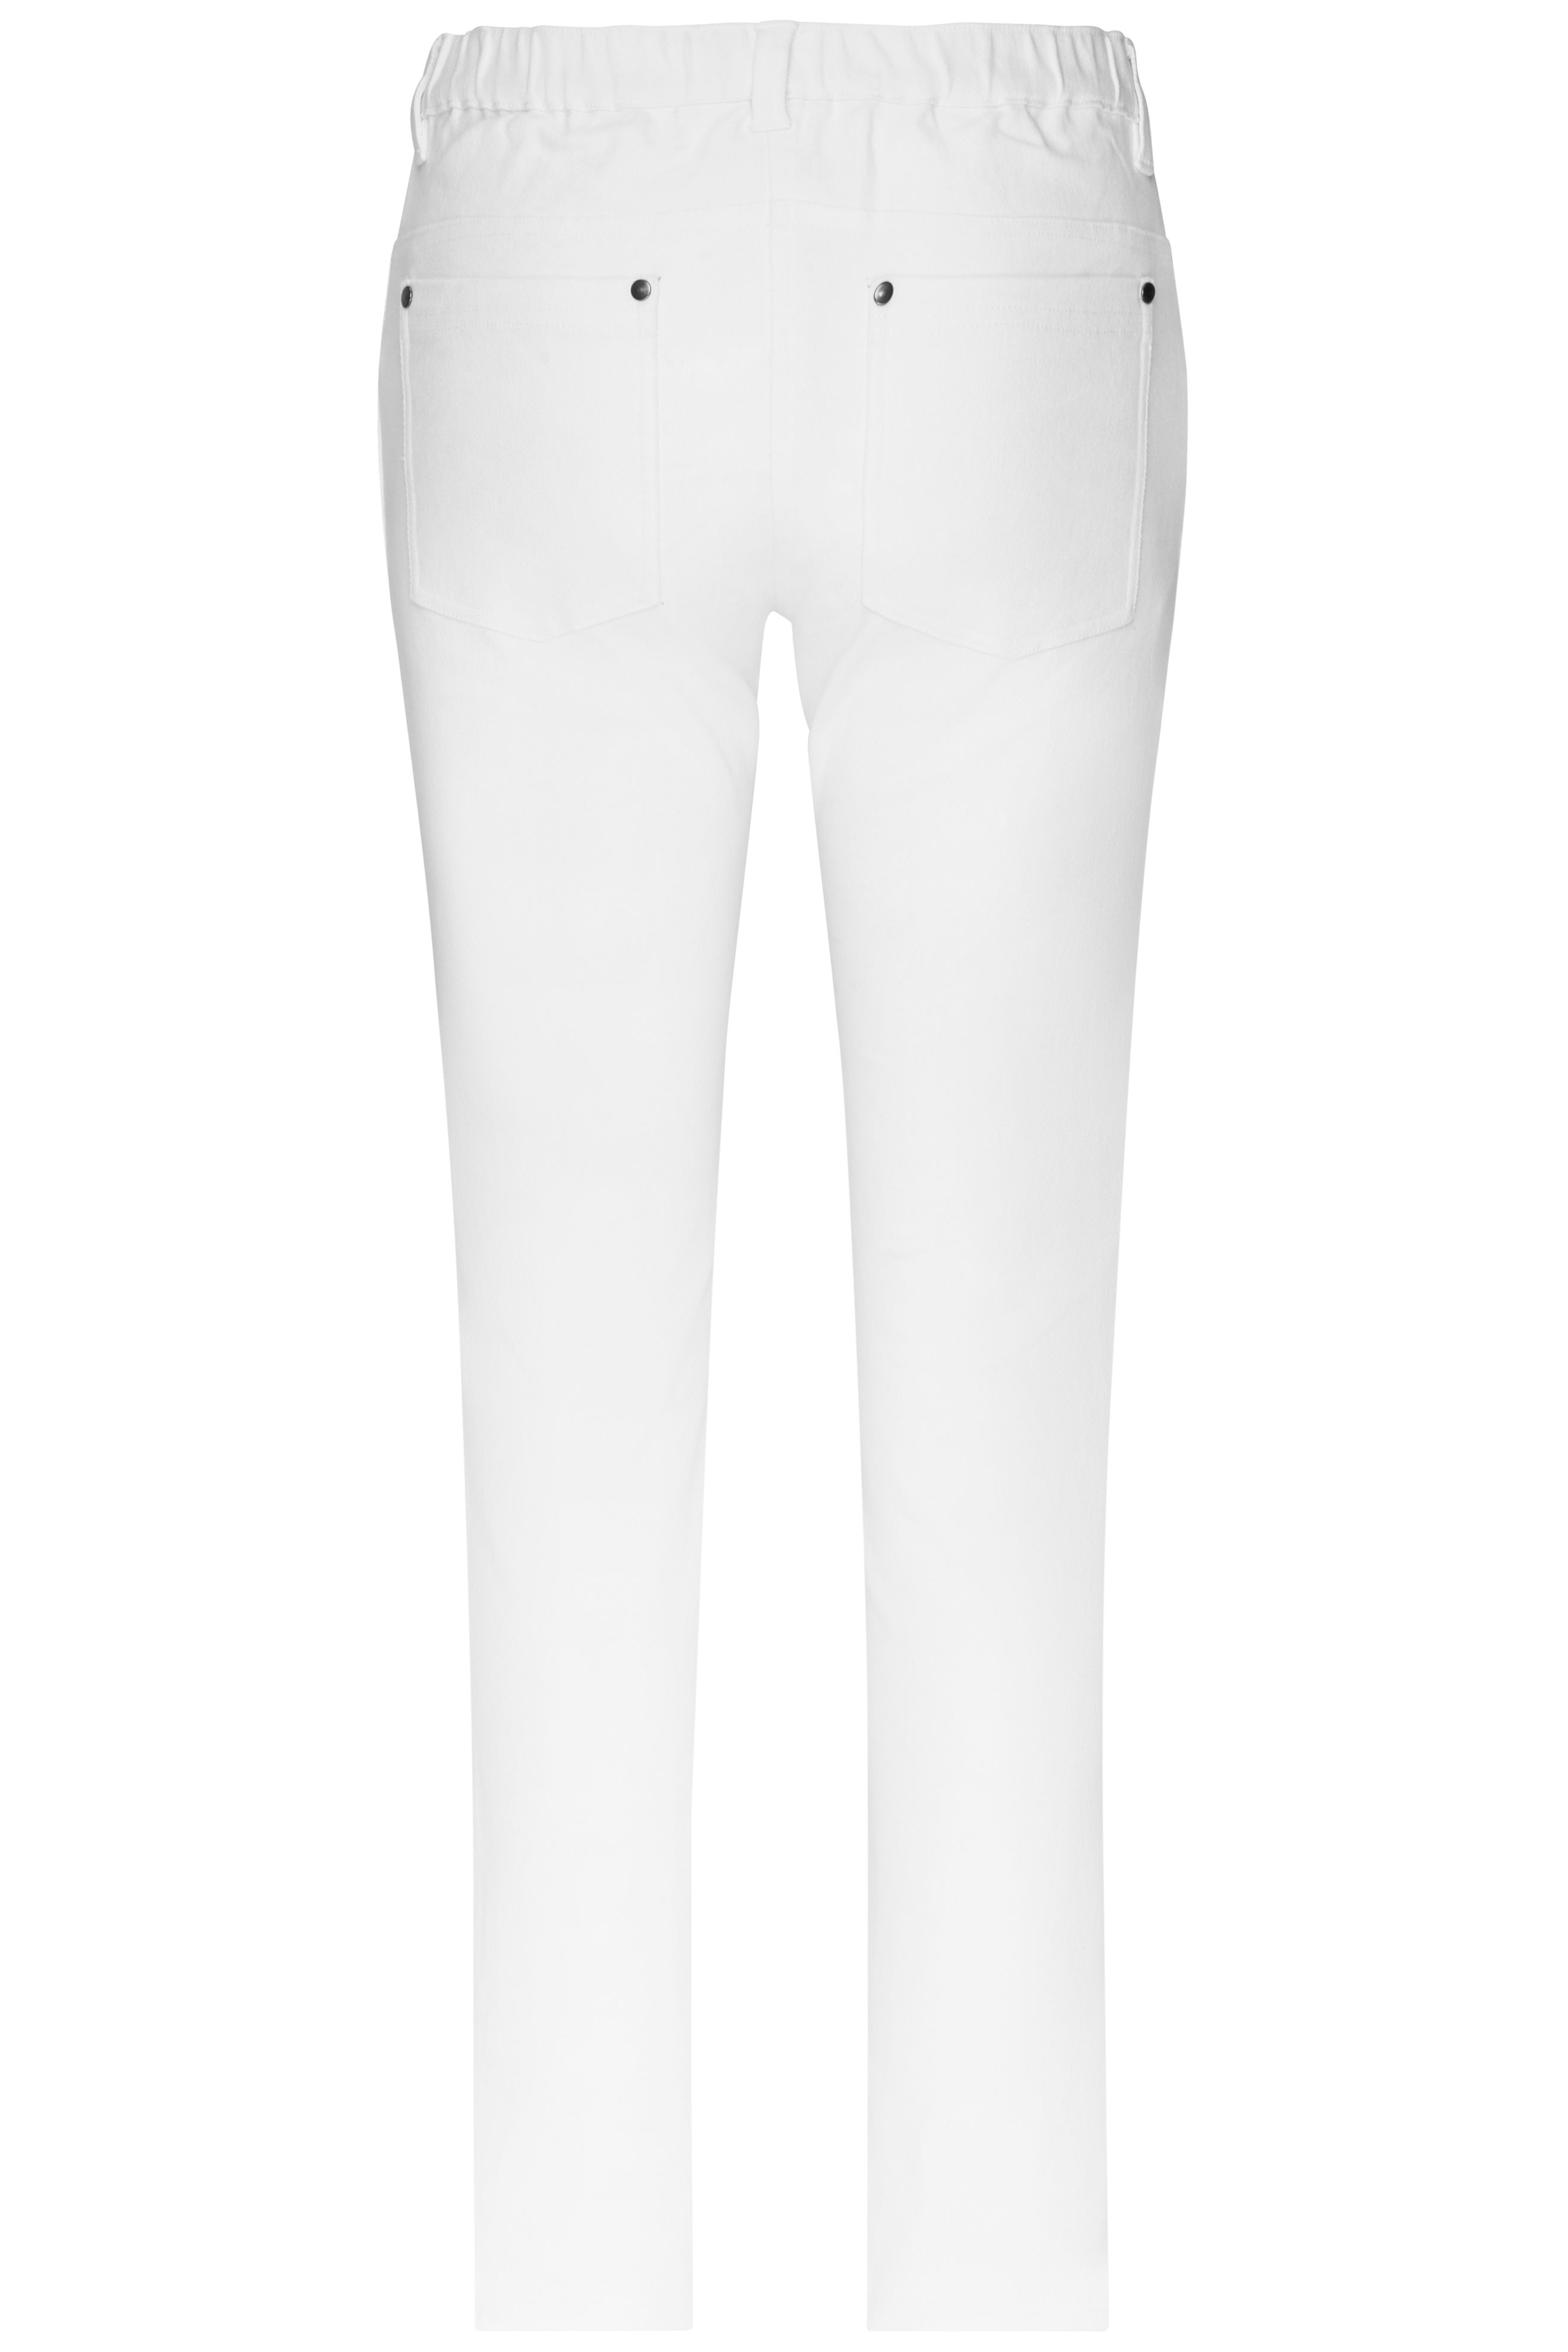 Ladies' 5-Pocket-Stretch-Pants JN3001 Hose im klassischen 5-Pocket Stil